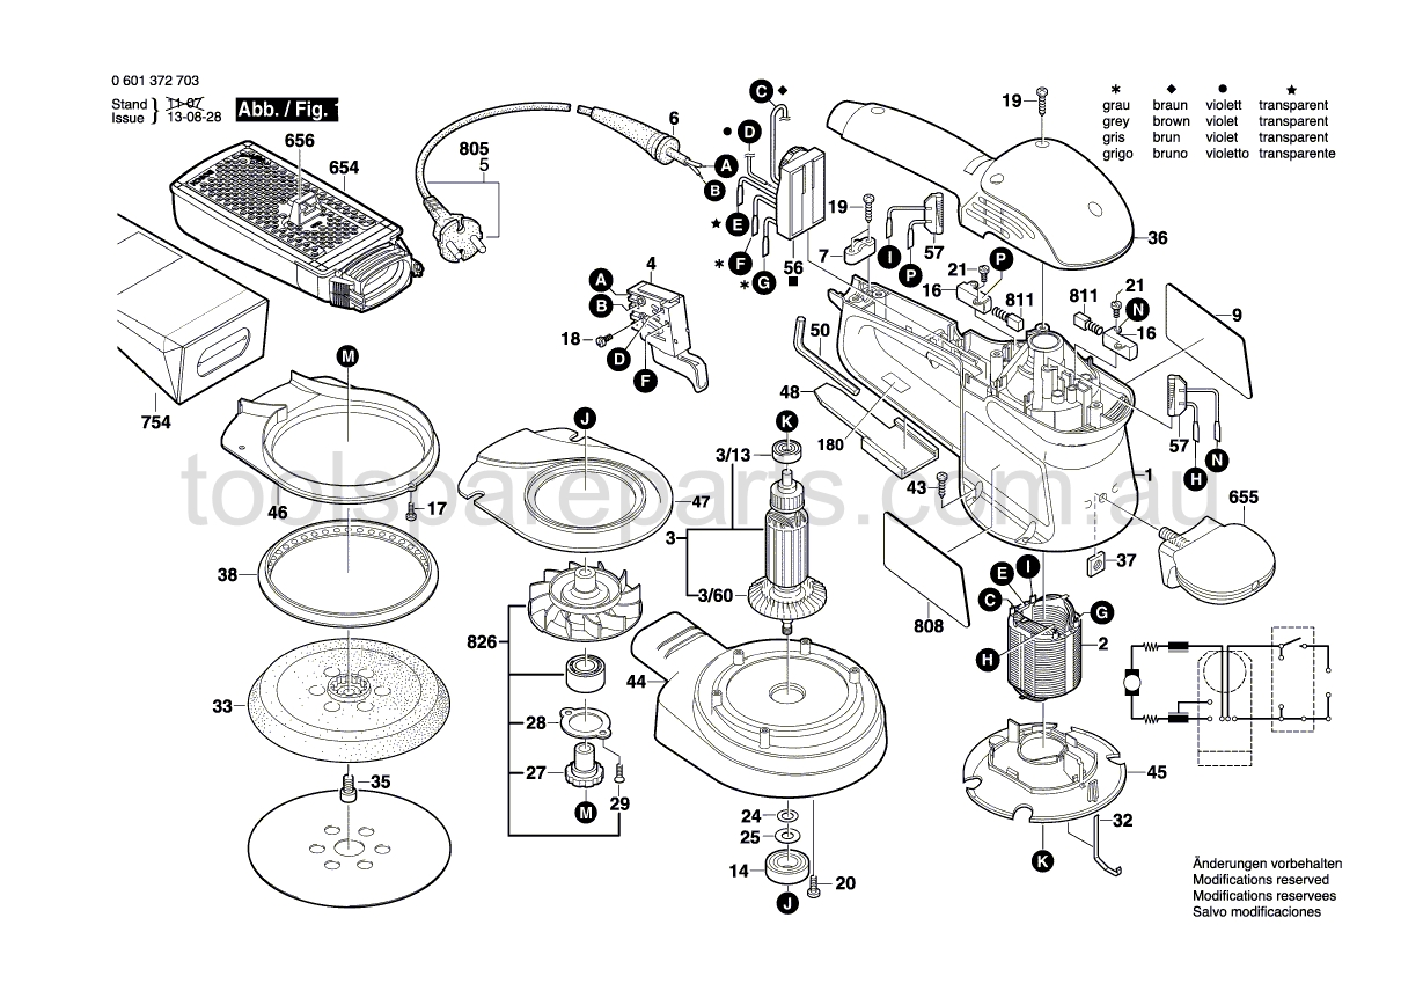 Bosch GEX 150 AC 0601372737  Diagram 1